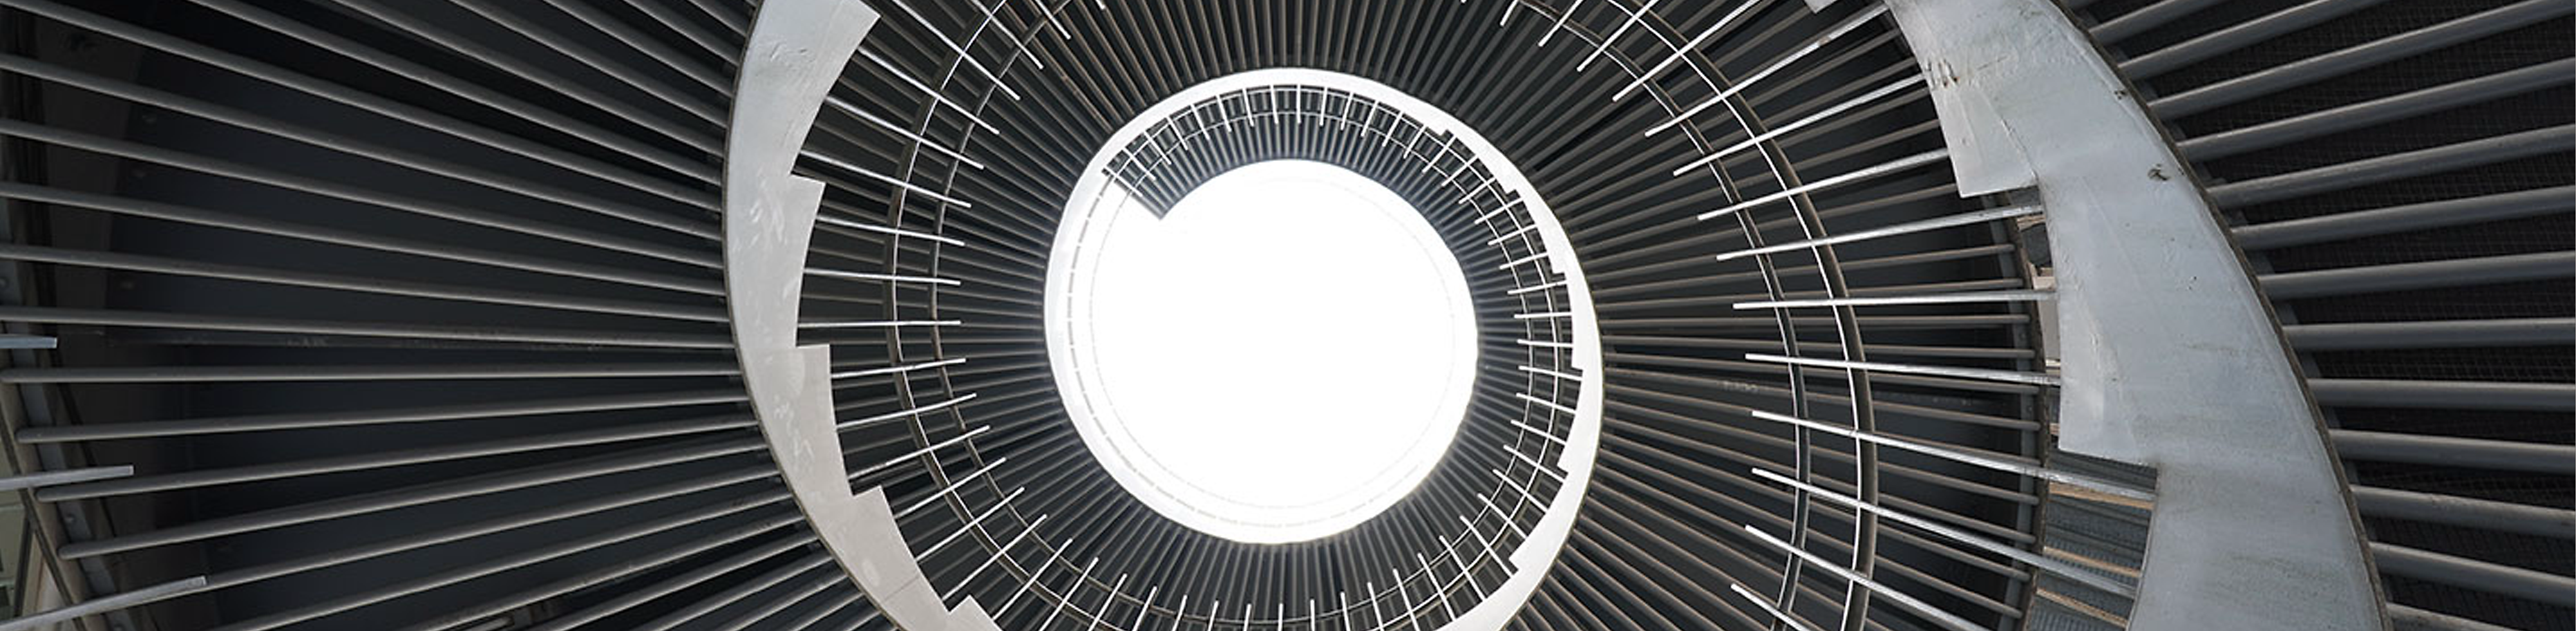 Imagem de uma escada em espiral